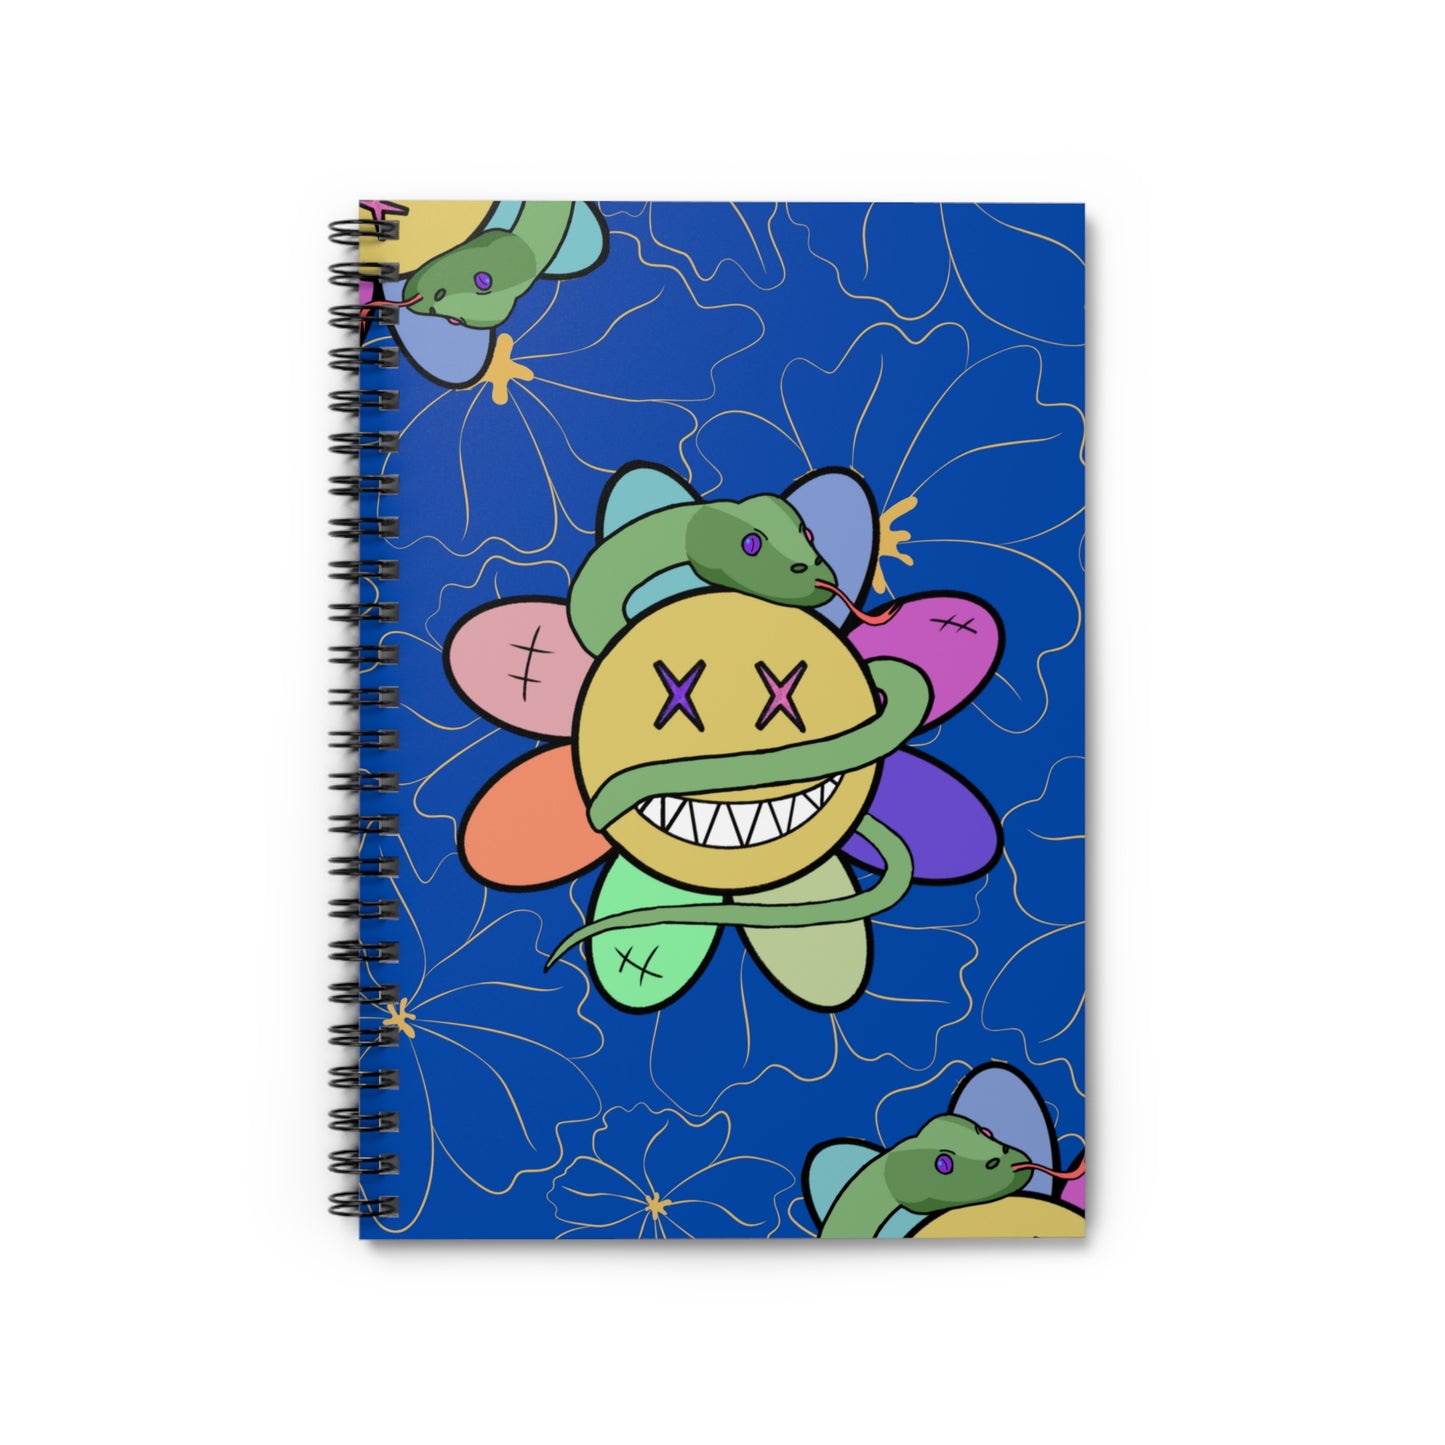 Karma Flower - Spiral Notebook